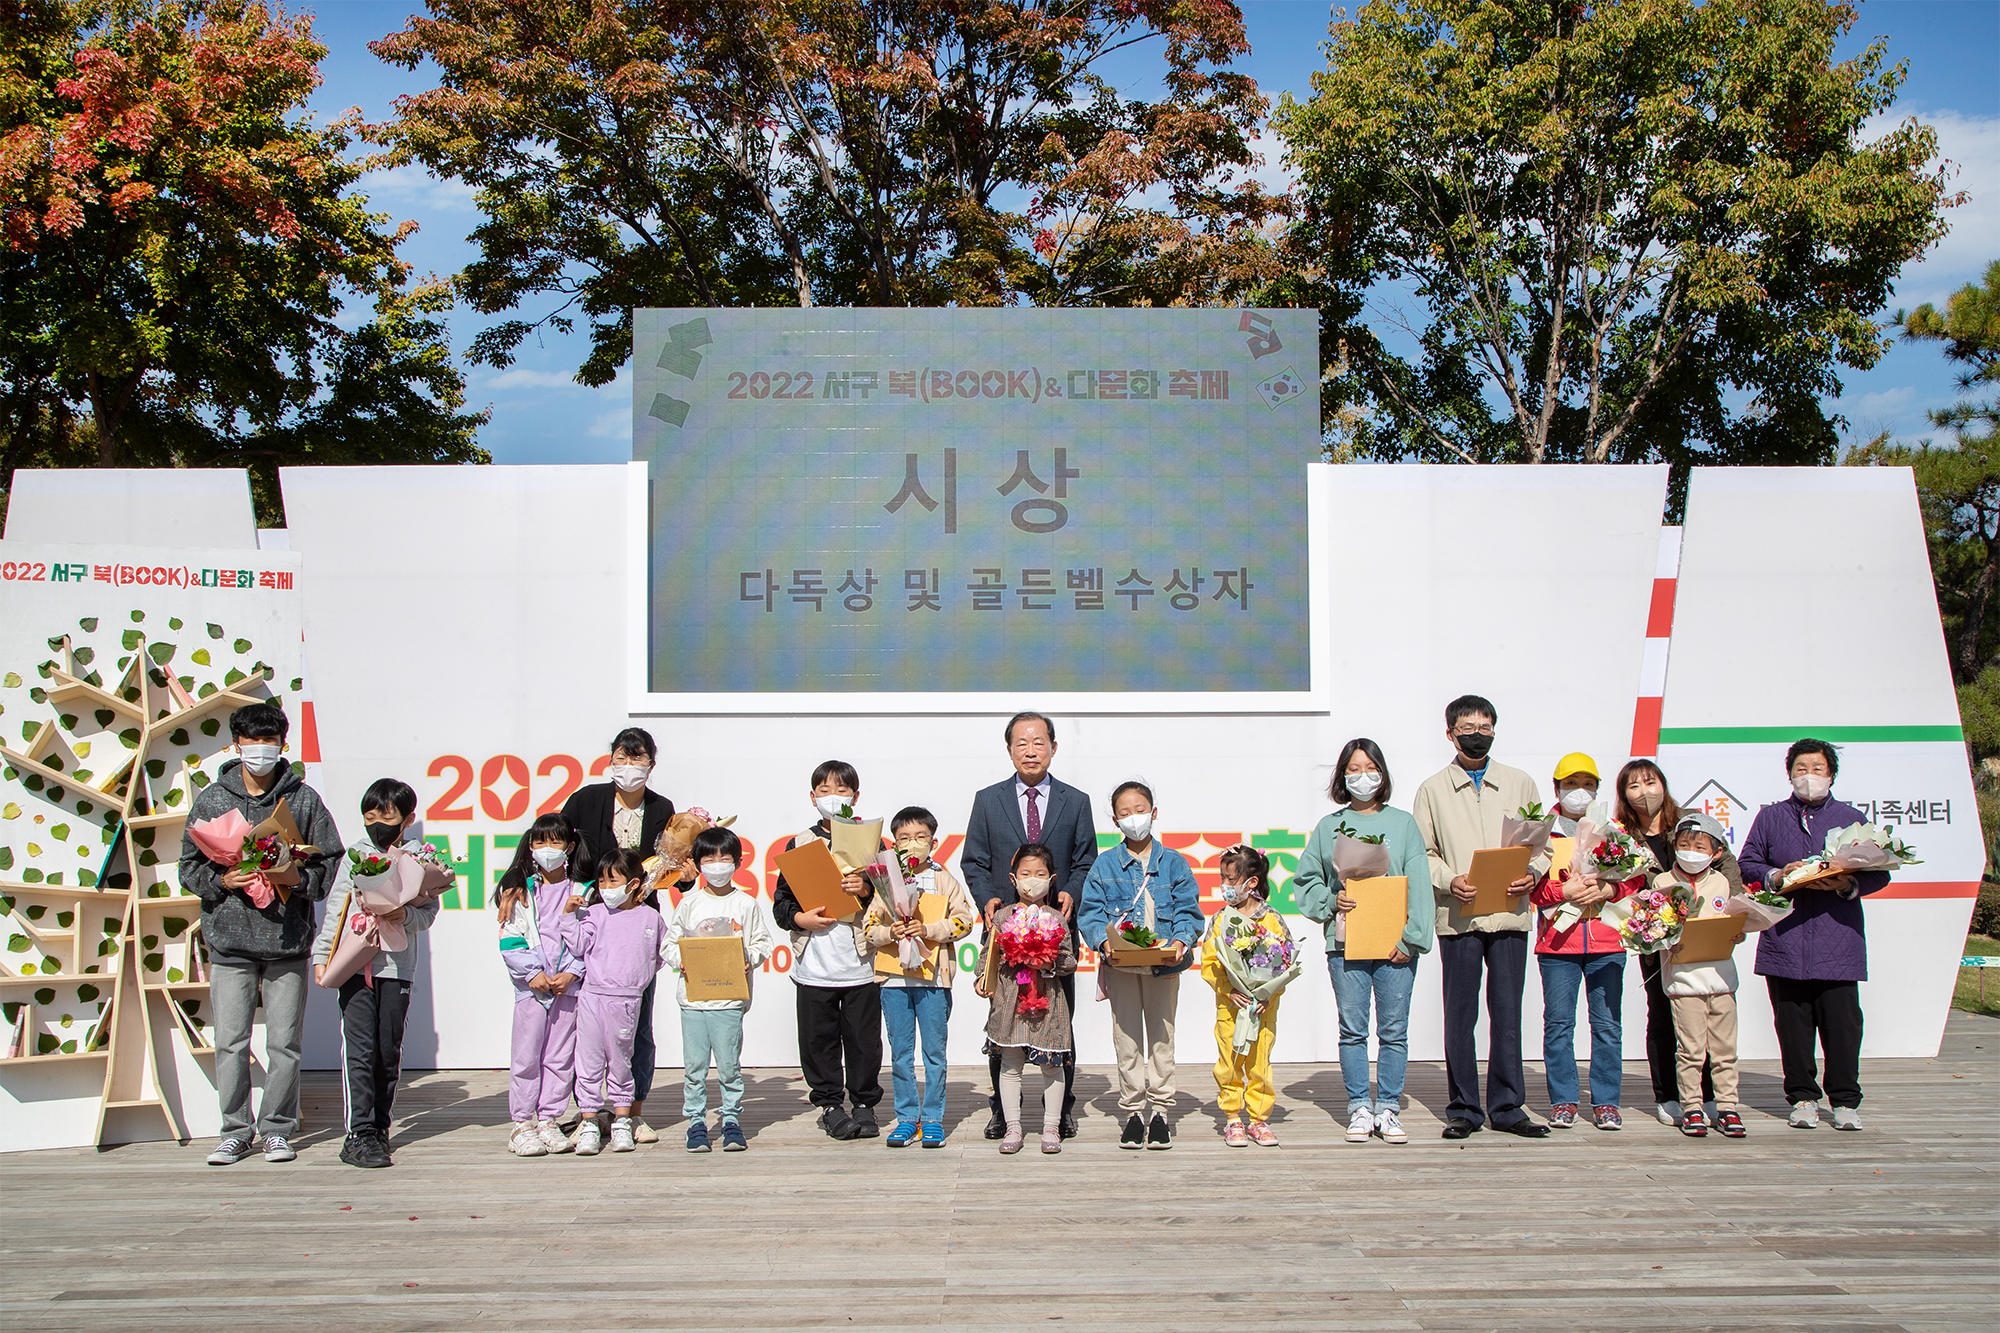 서구 북BOOK & 다문화축제가 개최(10.22 이현공원) 5